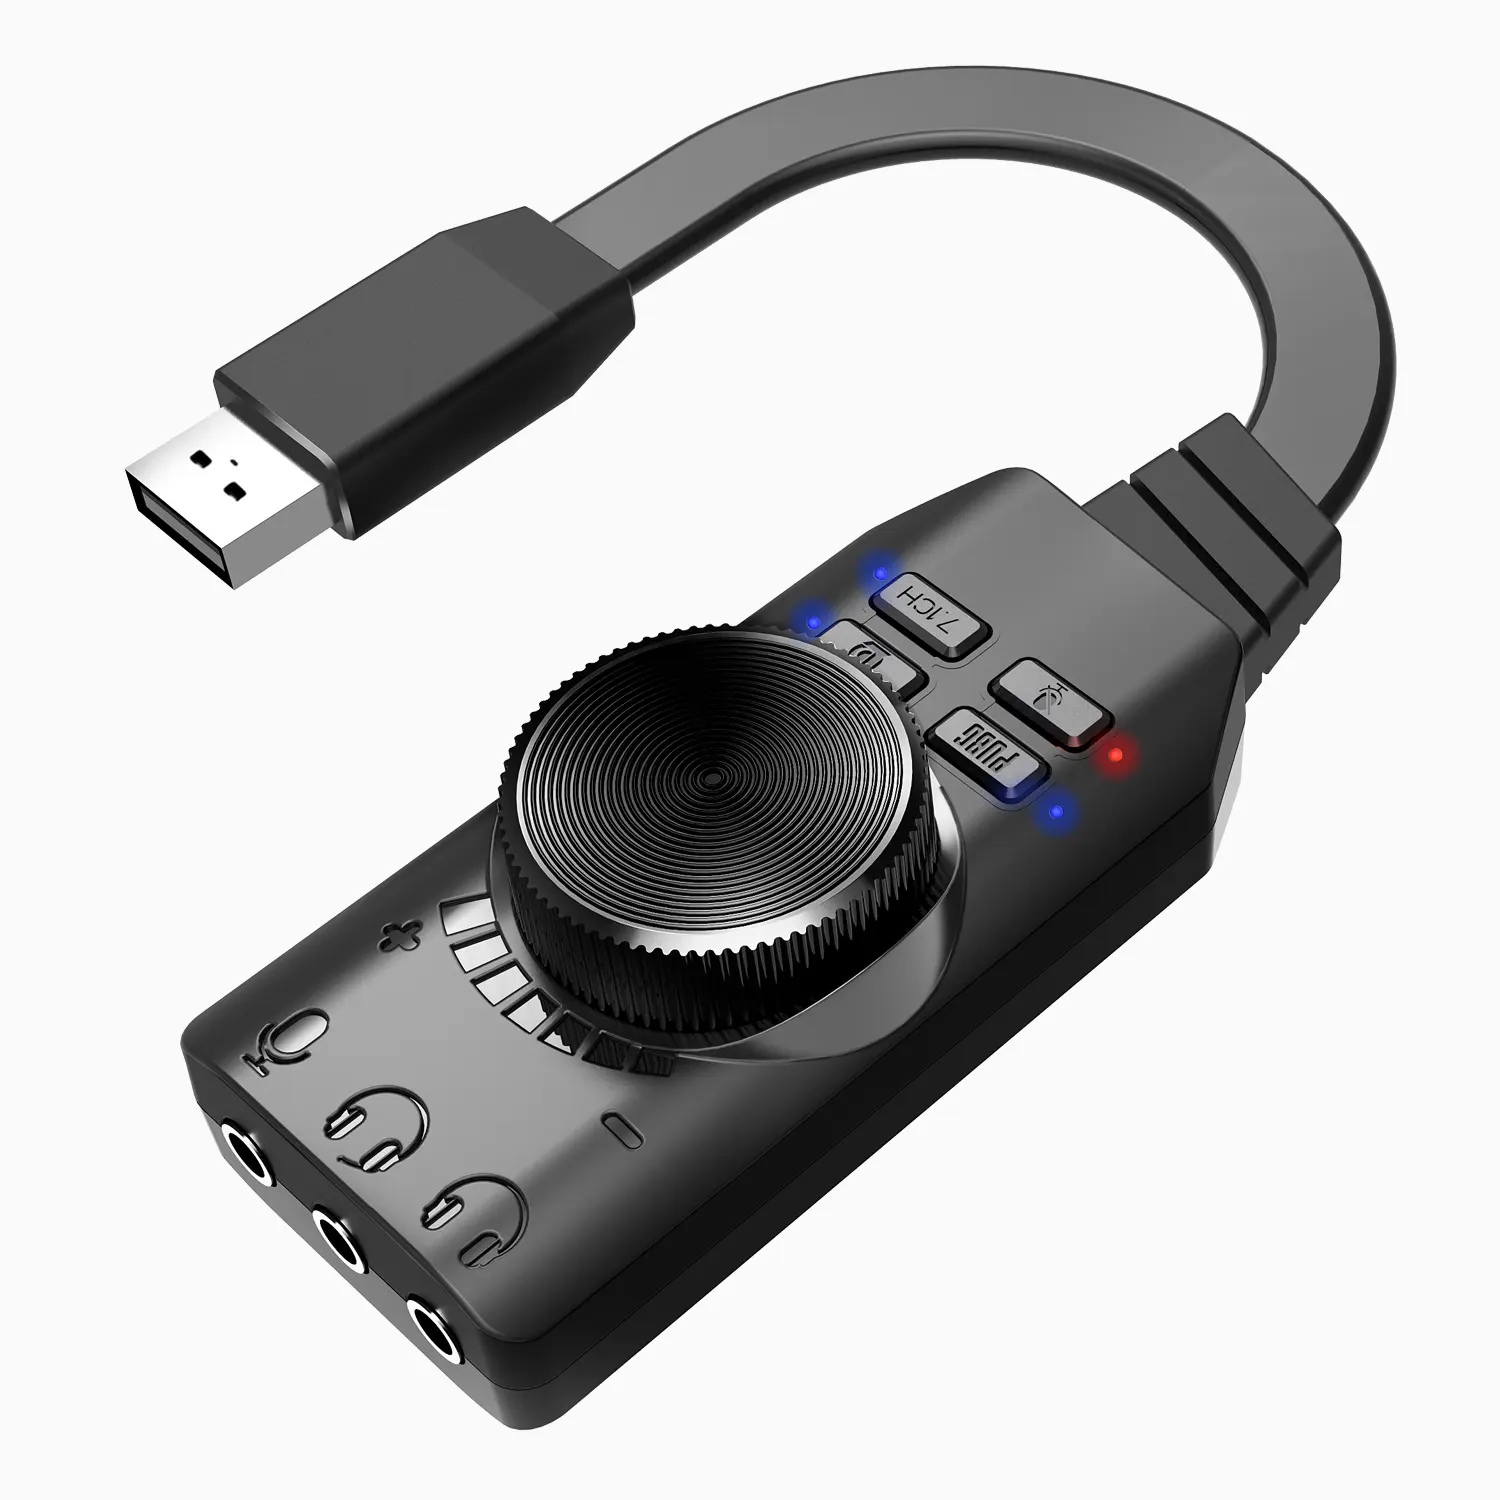 Plextone USB soundkarte virtuelle 7,1 ch soundkarte USB Audio Soundkarte GS3